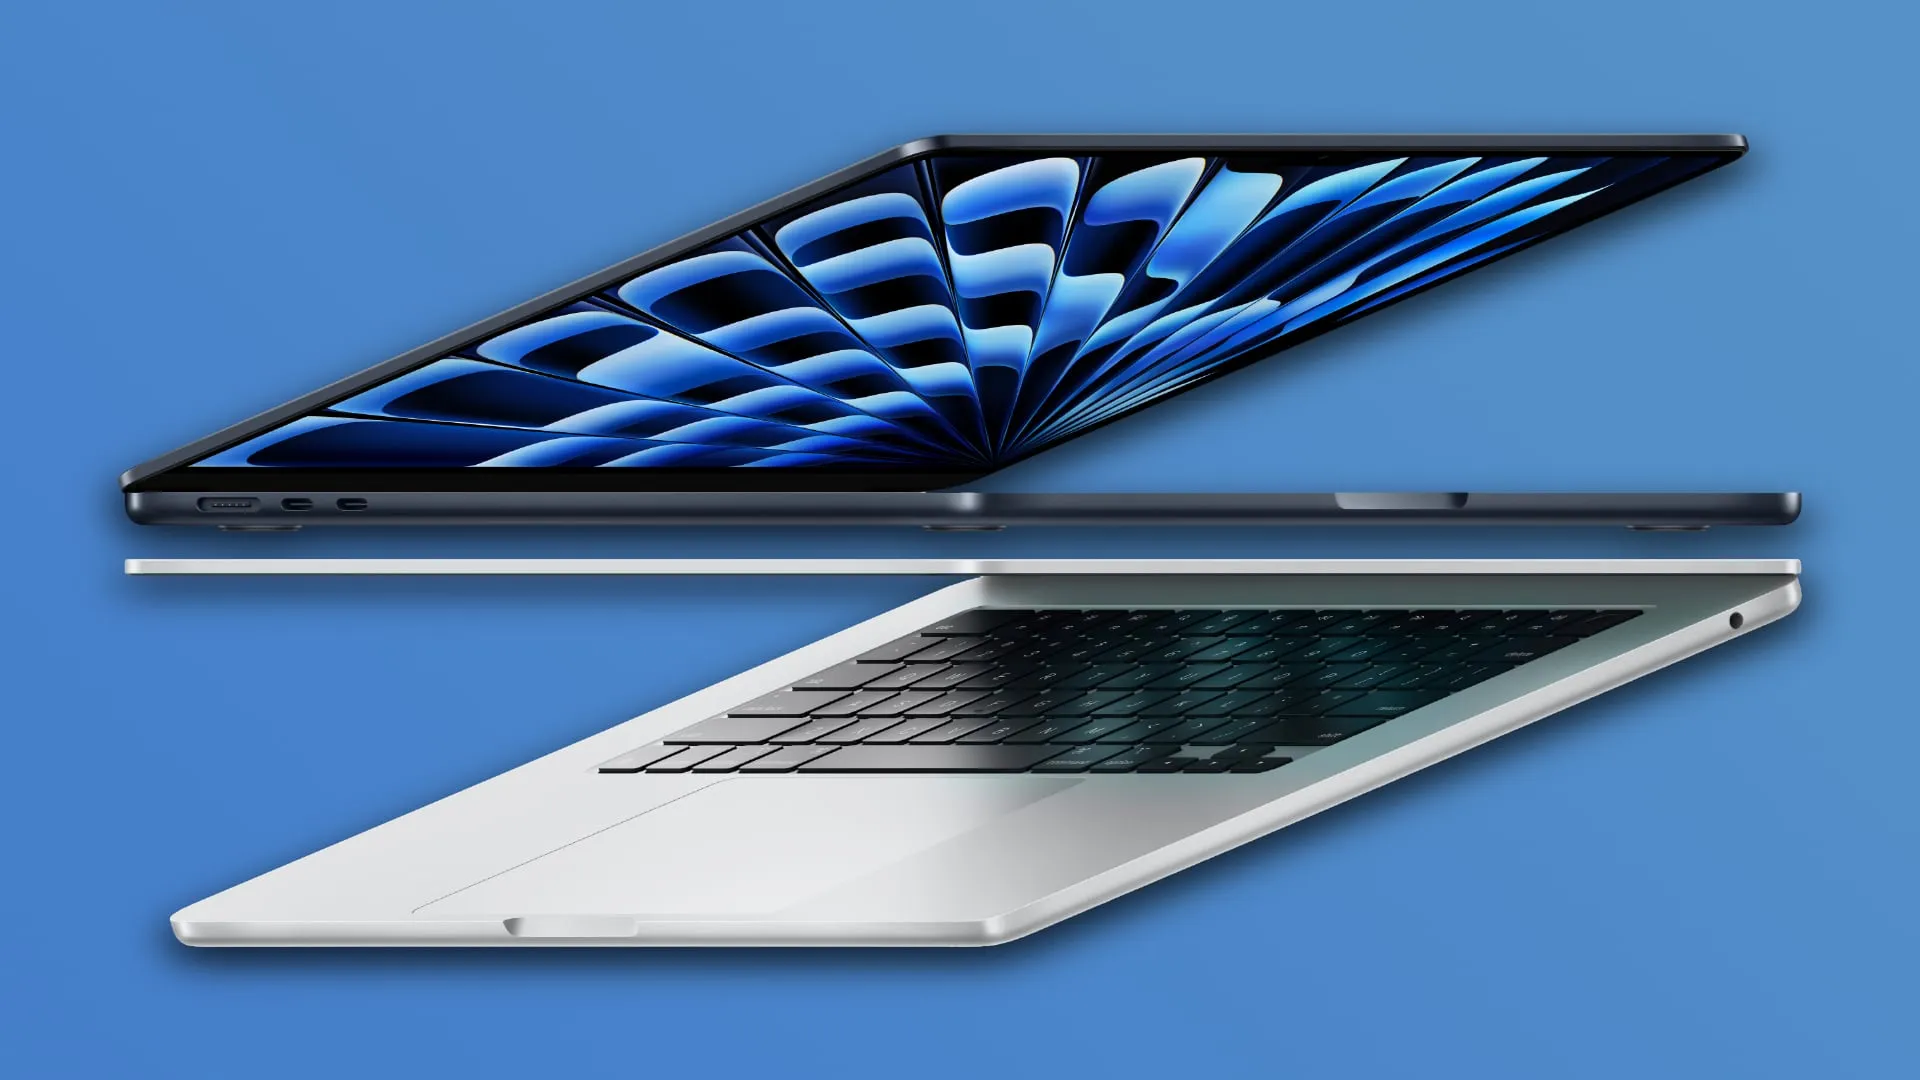 Dwa laptopy M3 MacBook Air z otwartymi pokrywami